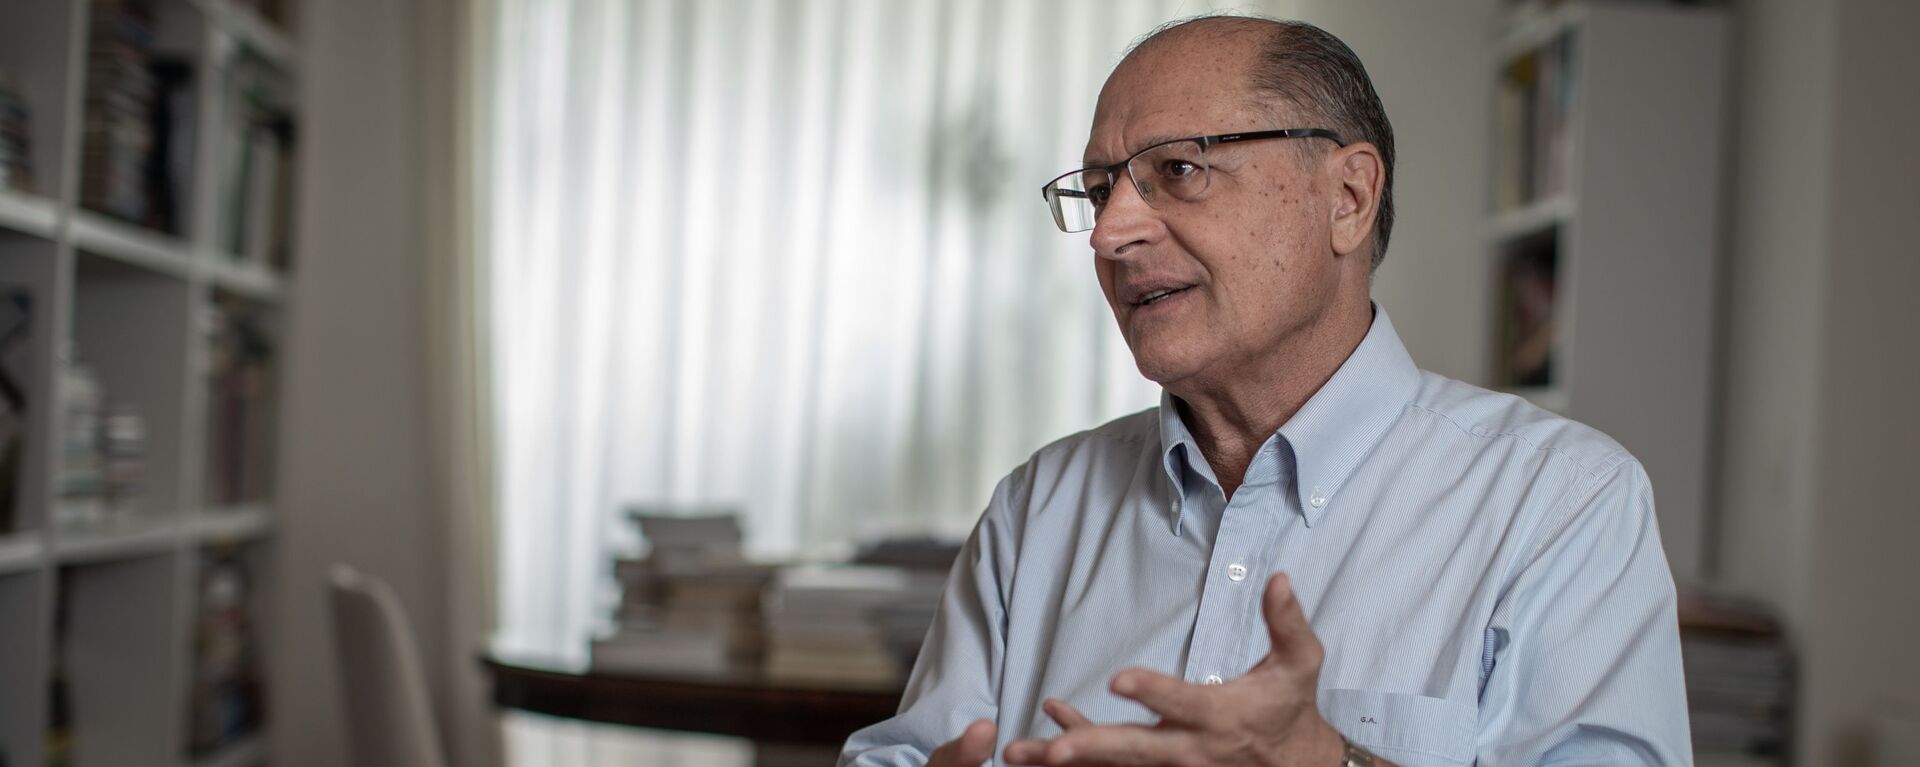 Ex-governador de São Paulo e ex-presidenciável Geraldo Alckmin, do PSDB - Sputnik Brasil, 1920, 29.11.2021